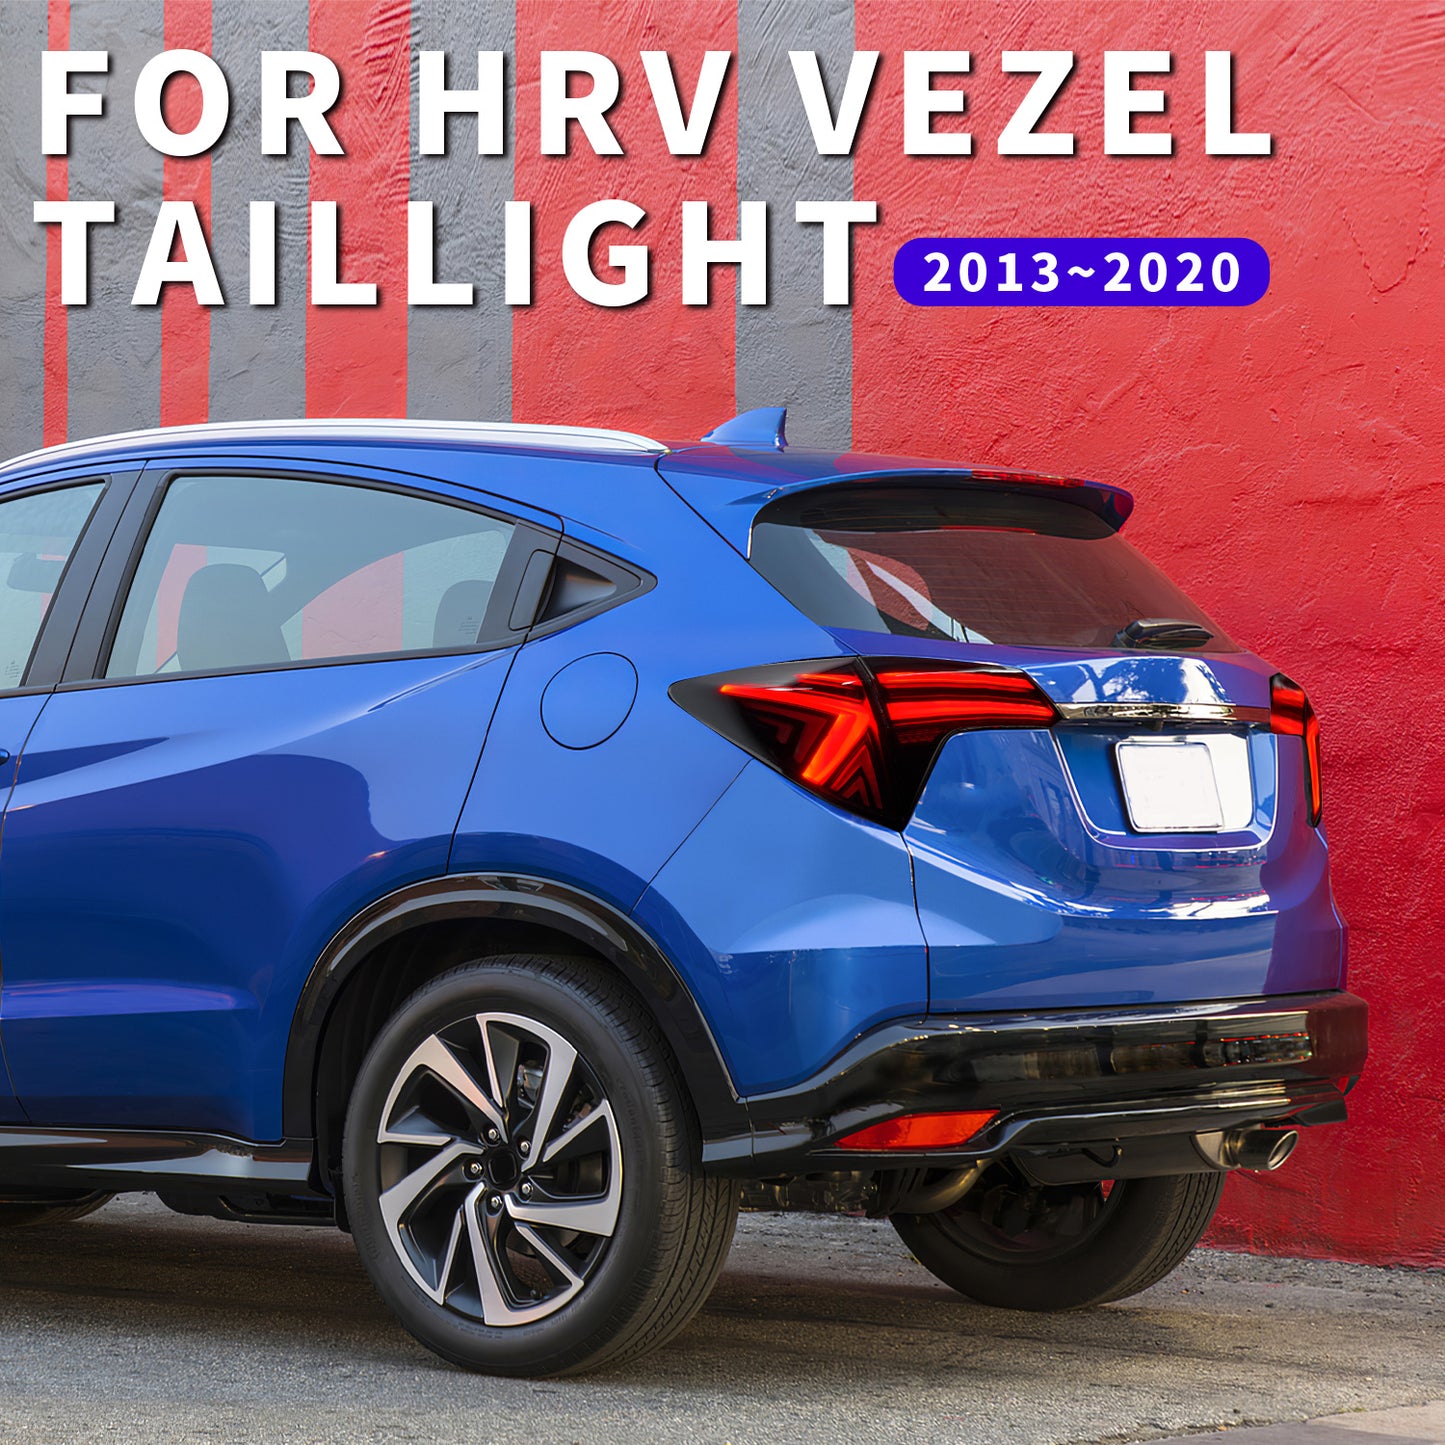 Full LED Tail Lights Assembly For Honda Vezel HRV 2013-2021